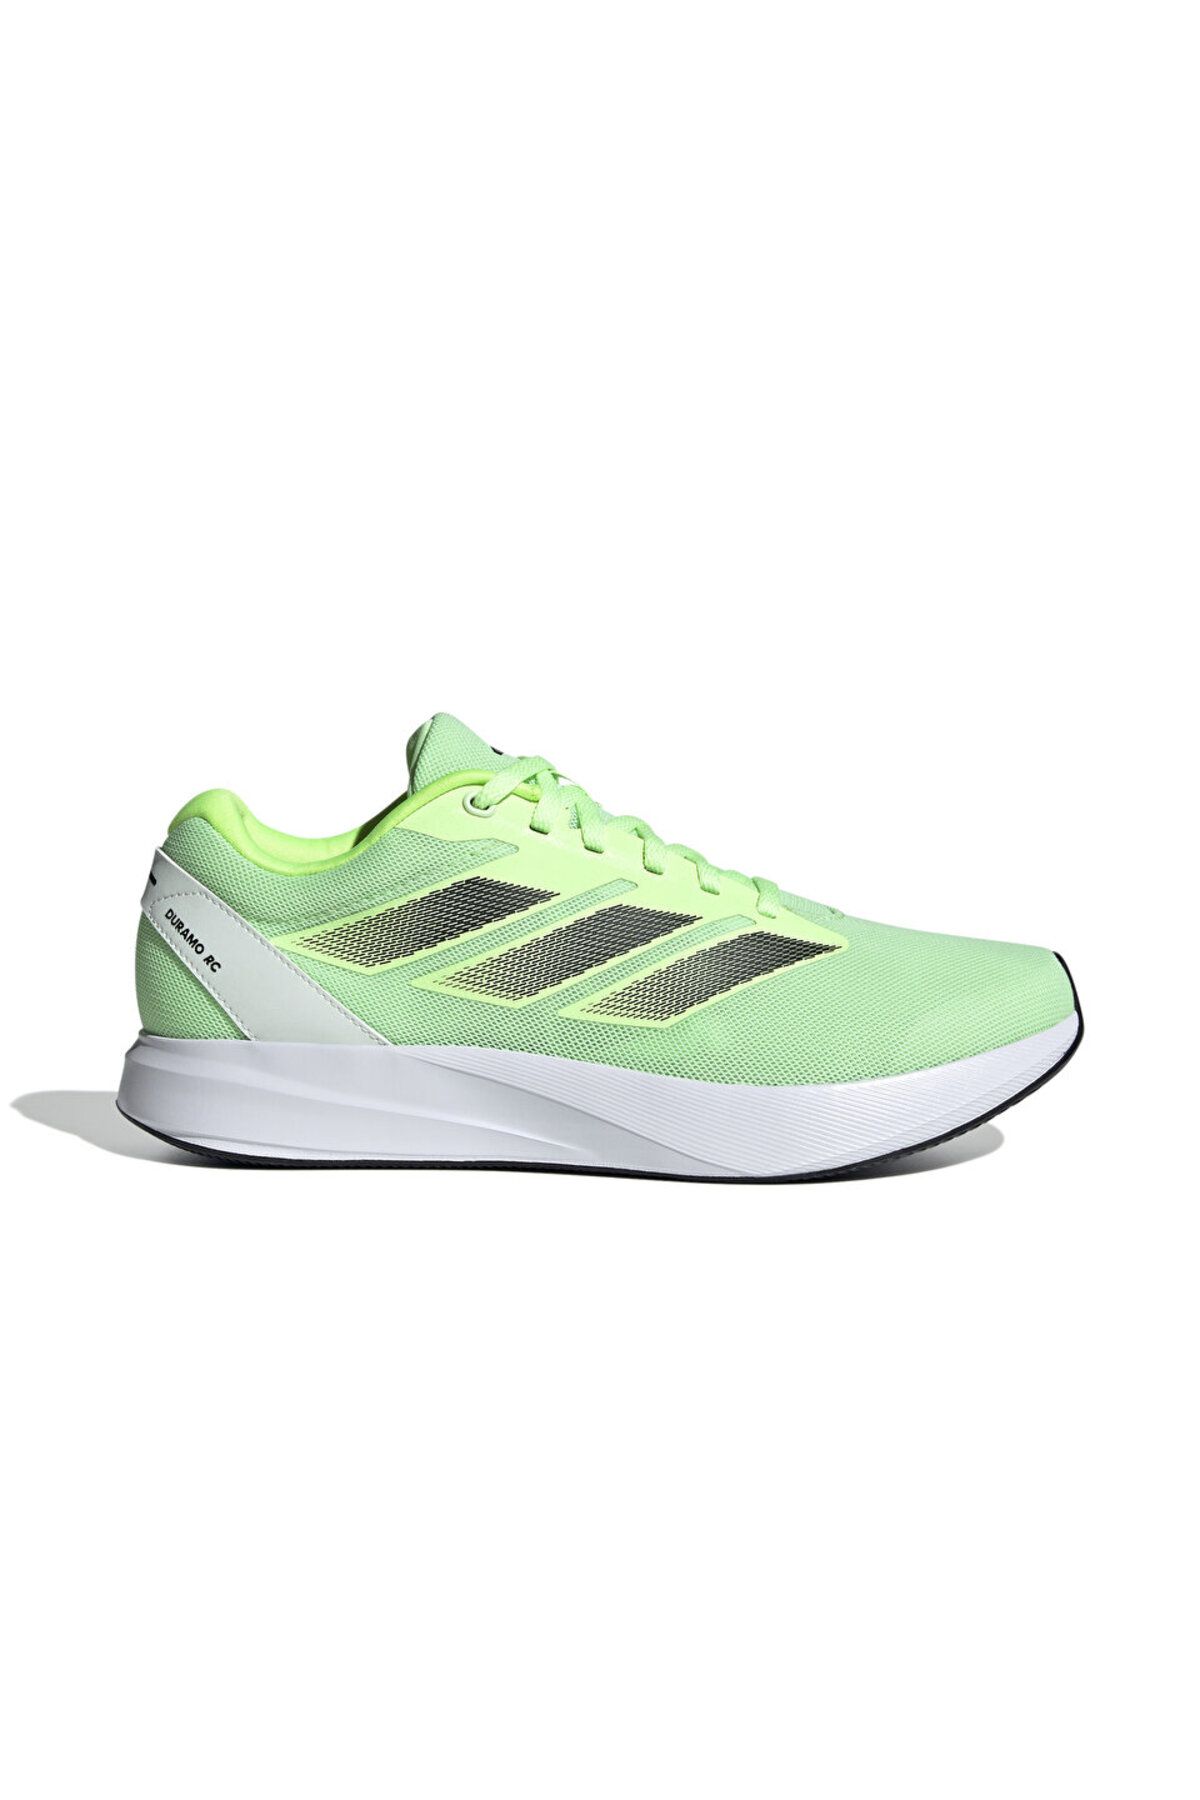 adidas Duramo Rc U Erkek Koşu Ayakkabısı IE7990 Yeşil